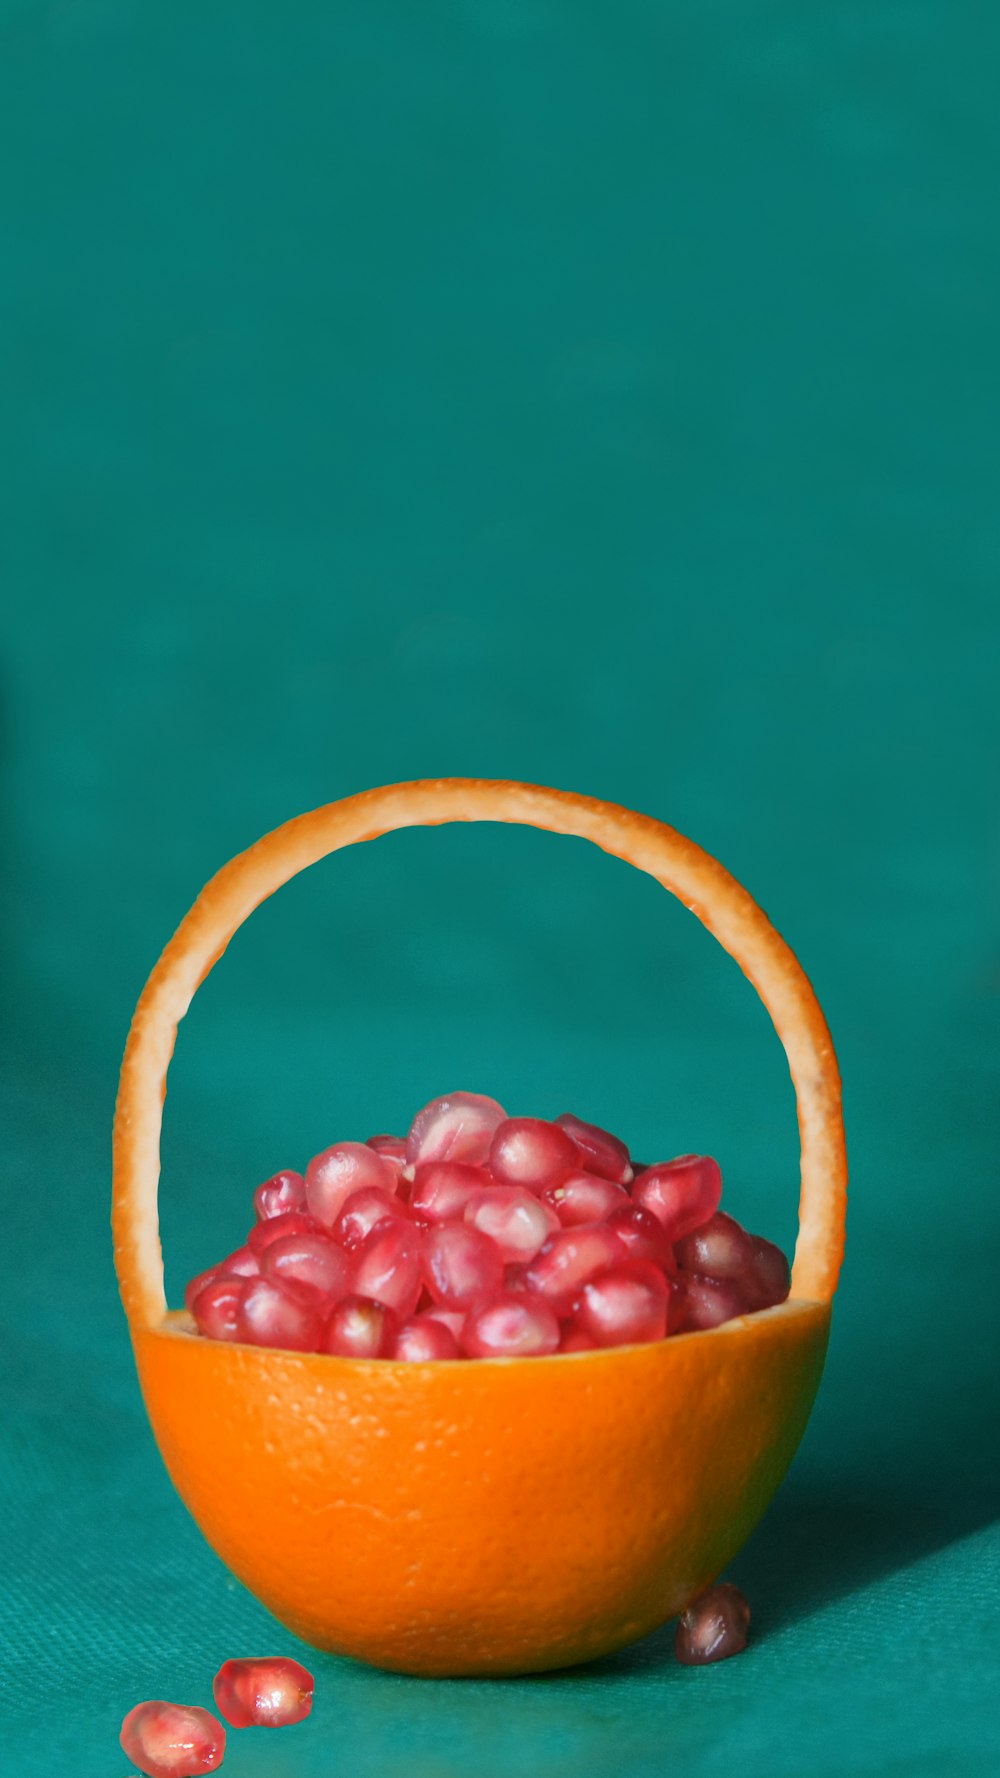 pink fruits on basket